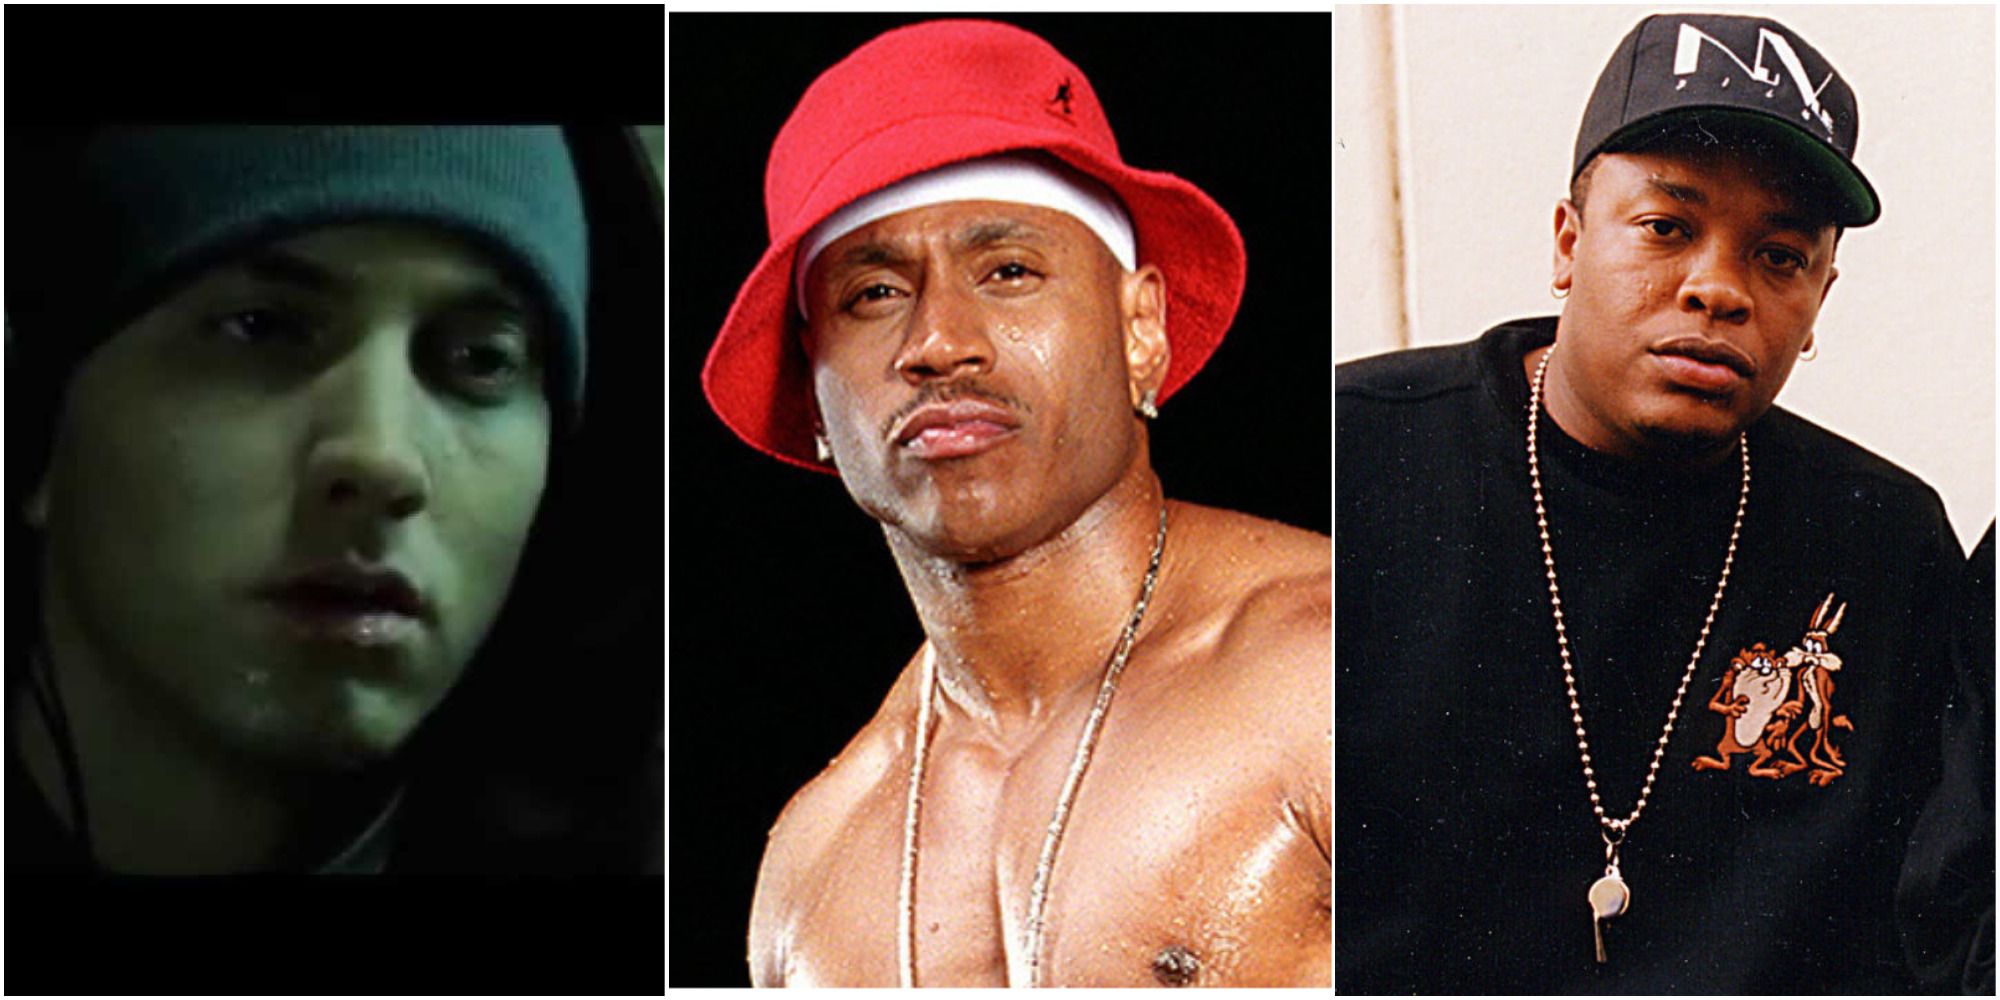 10 Best Movie Rap Songs, Ranked By Top YouTube Streams